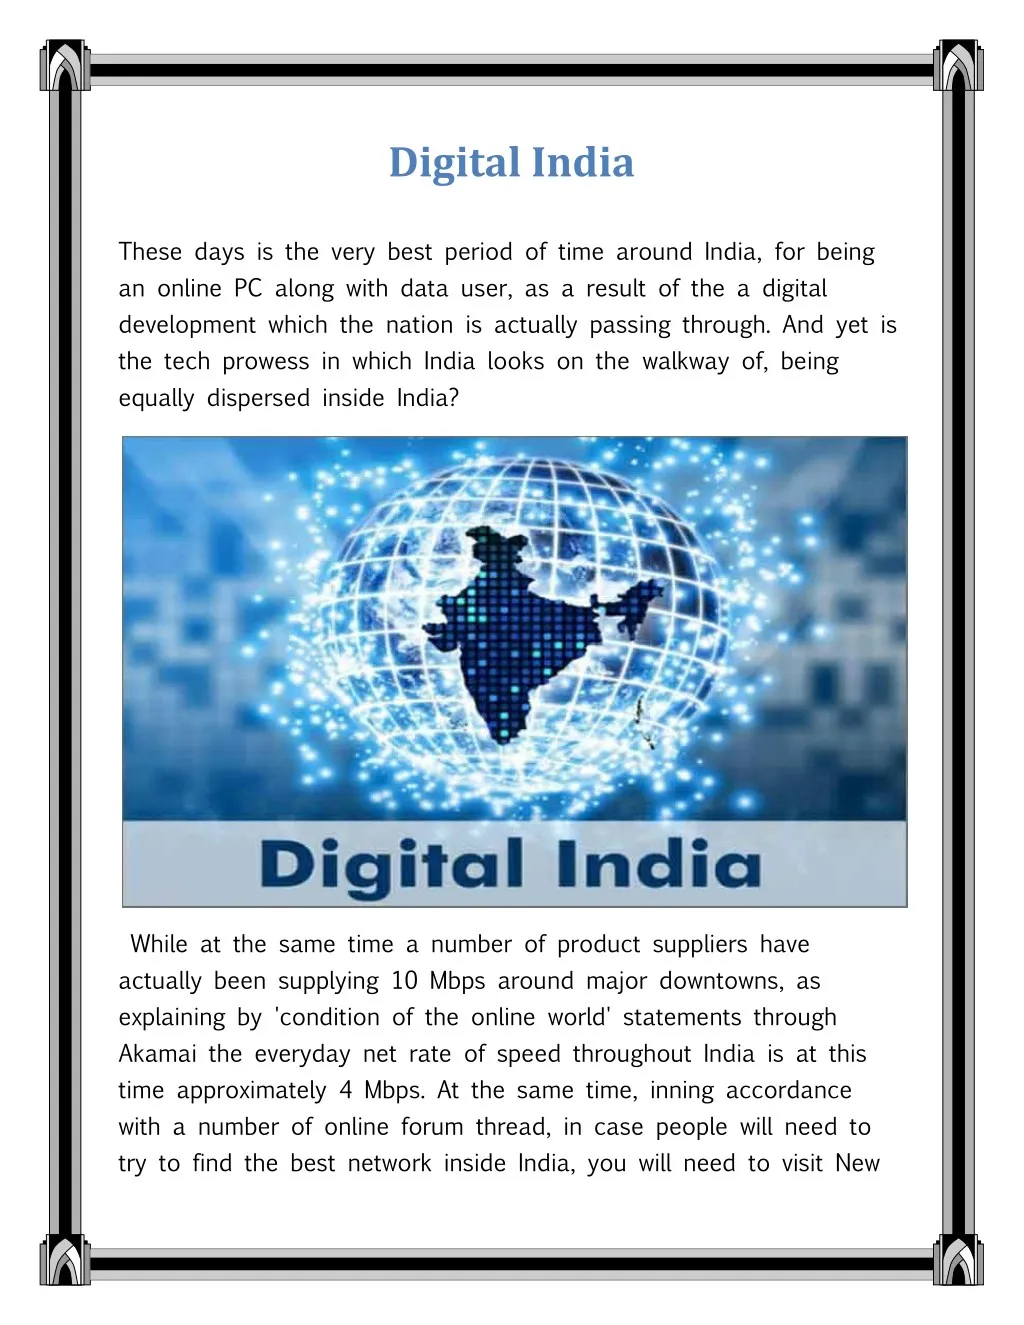 digital revolution in india essay